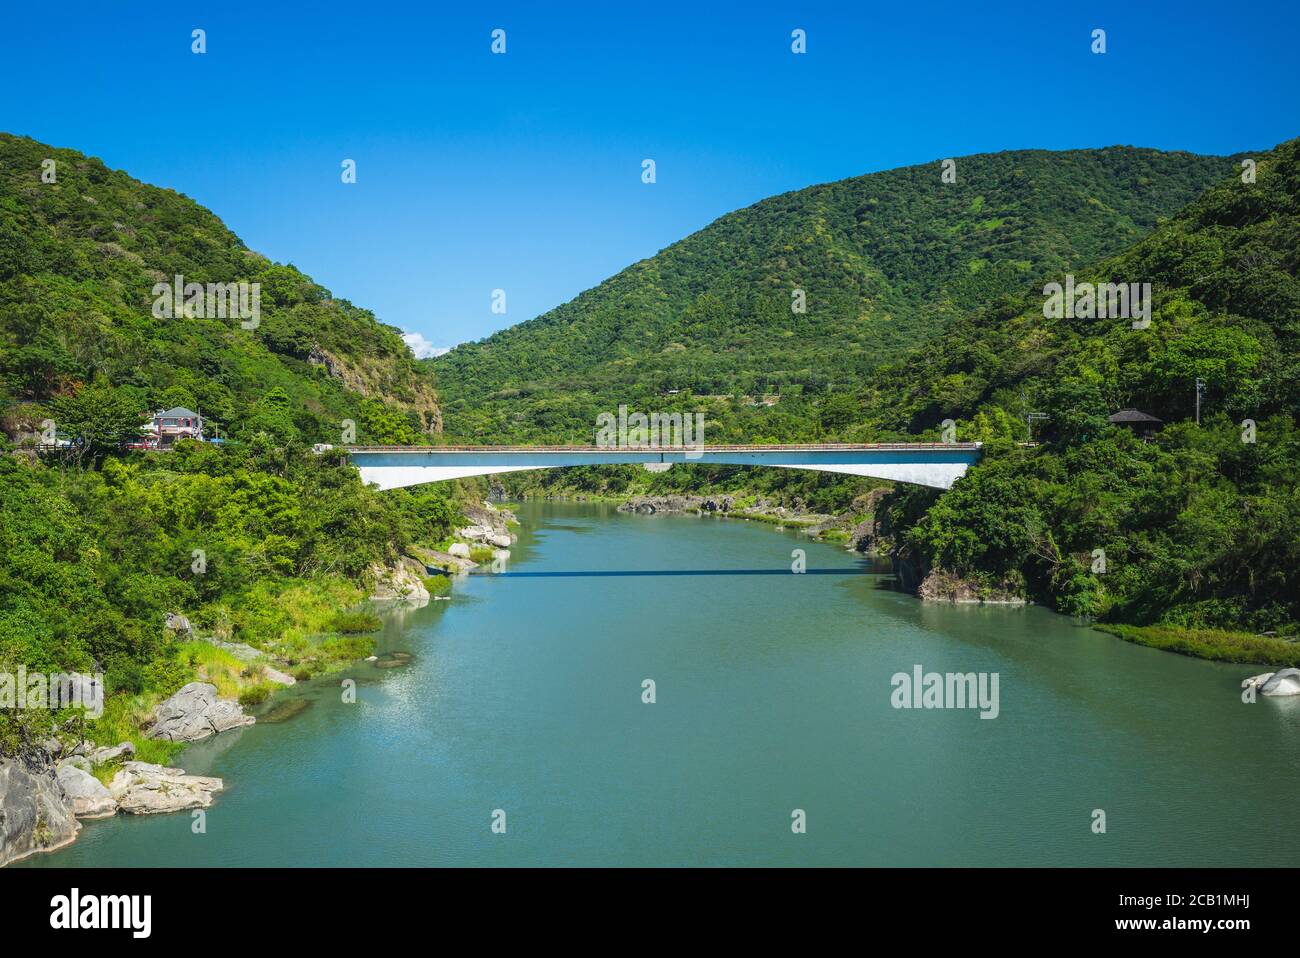 Changhong Bridge over the Xiuguluan River in Hualien, Taiwan Stock Photo